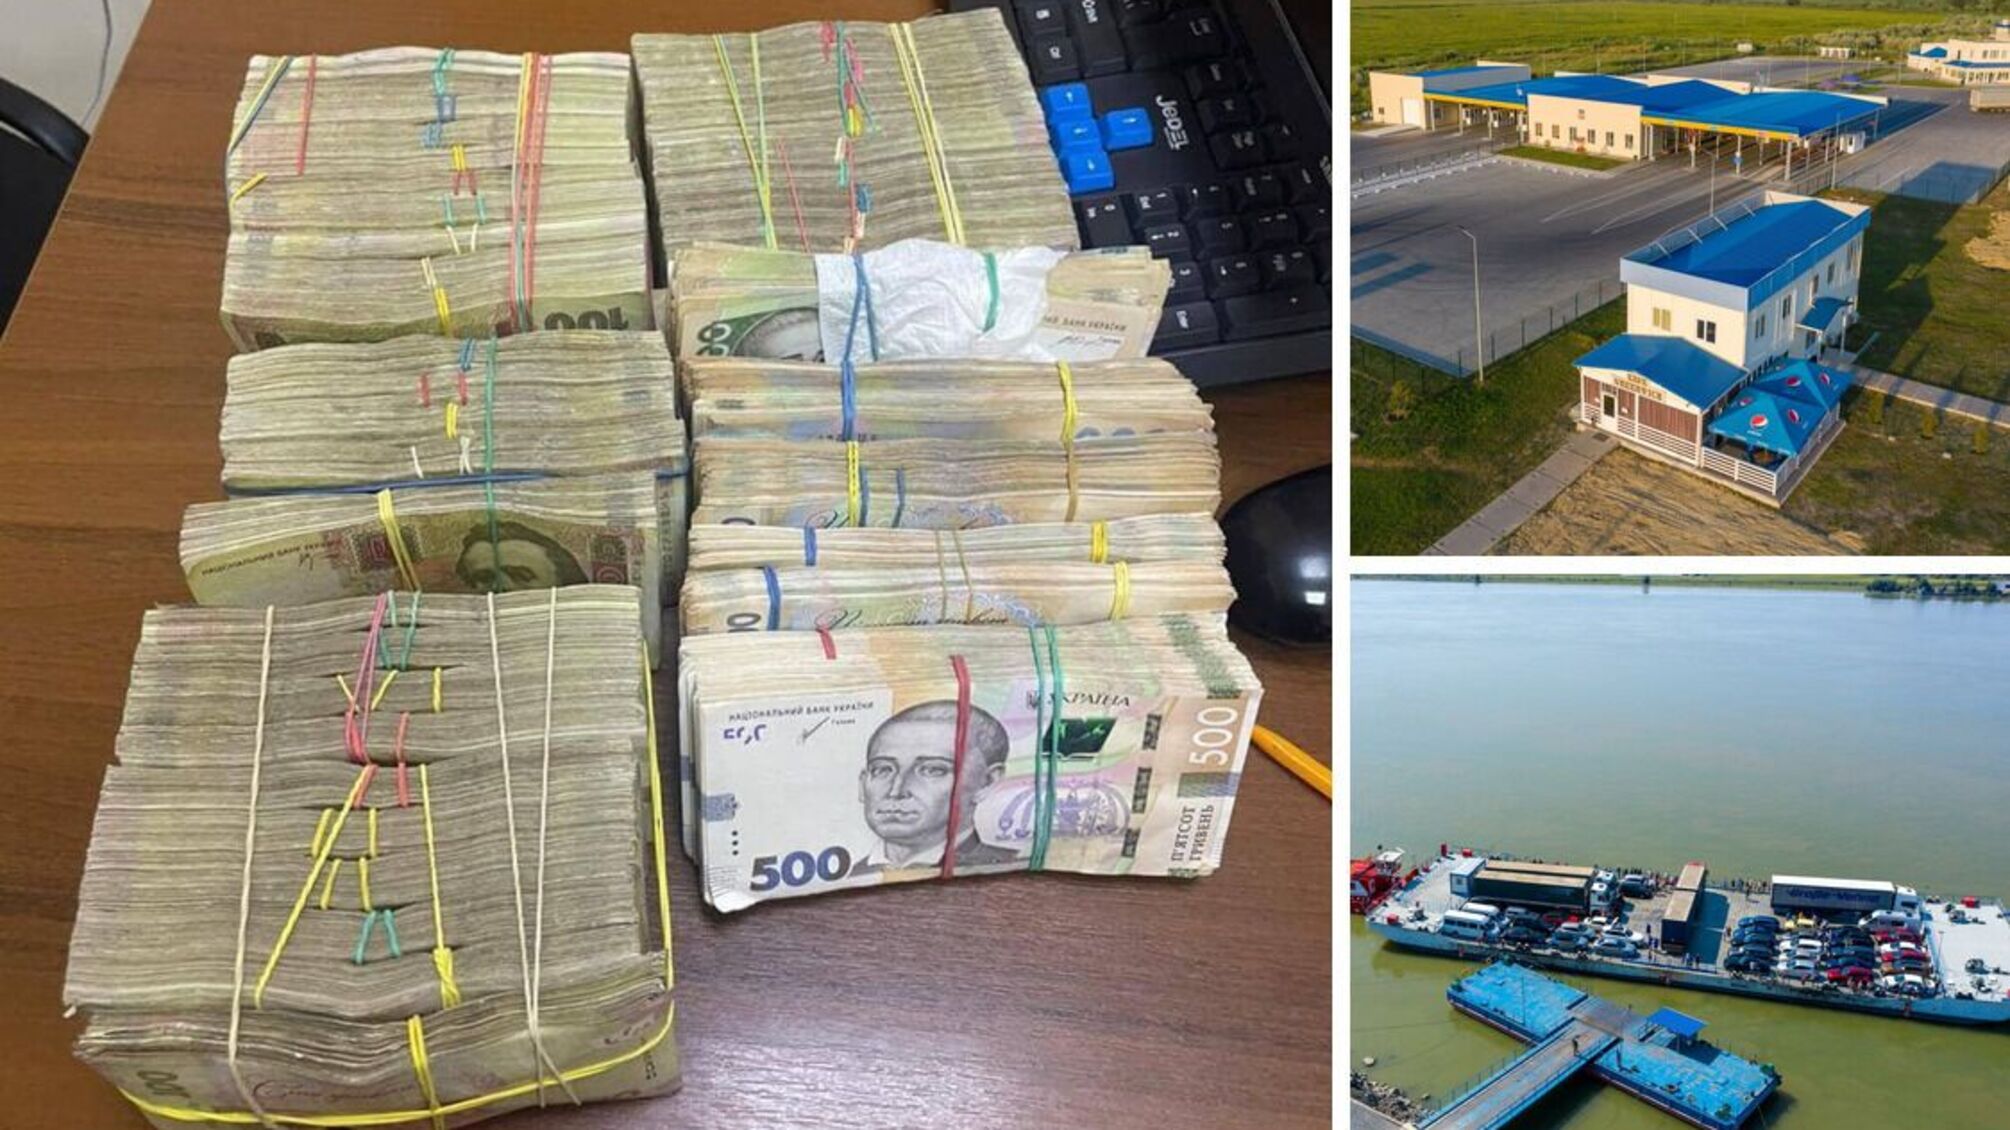 Мільйон гривень під ковдрою: водій автобусу 'надійно' сховав нелегальну готівку - деталі ДПСУ